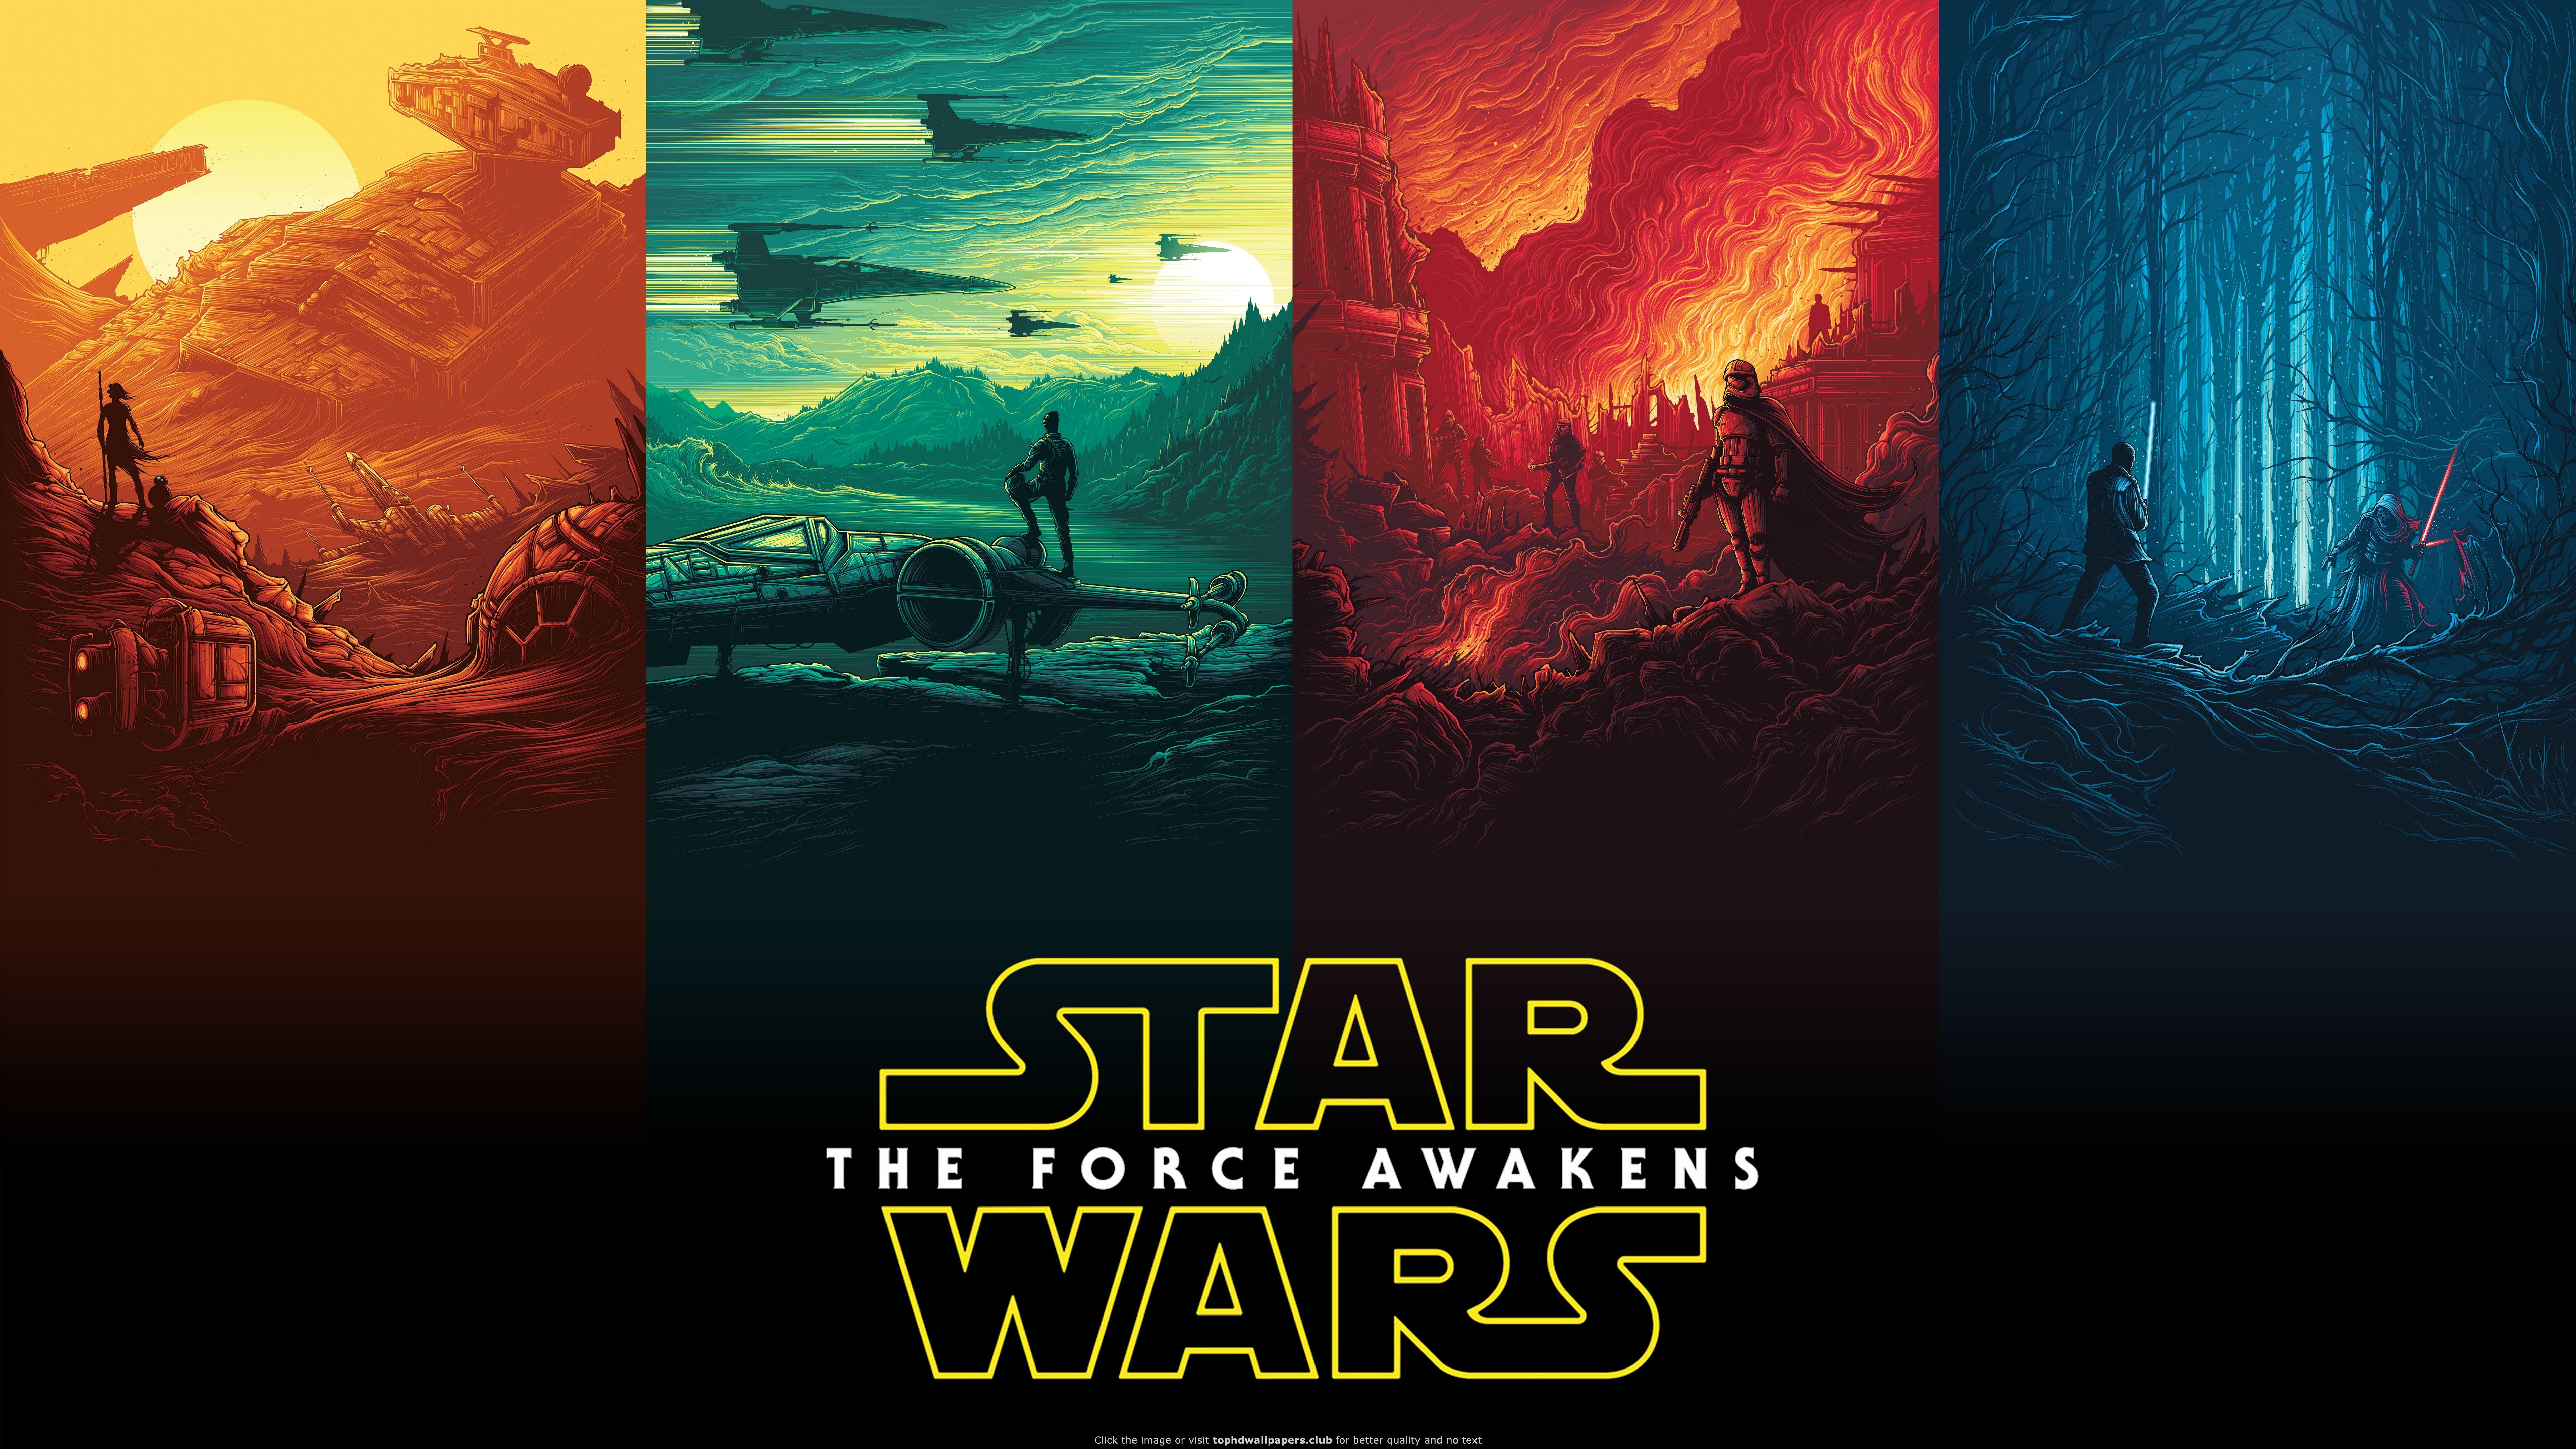 Rey Finn Kylo Ren Han Solo Luke Skywalker Star Wars 4K wallpaper. Star wars wallpaper, Star wars background, Star wars poster